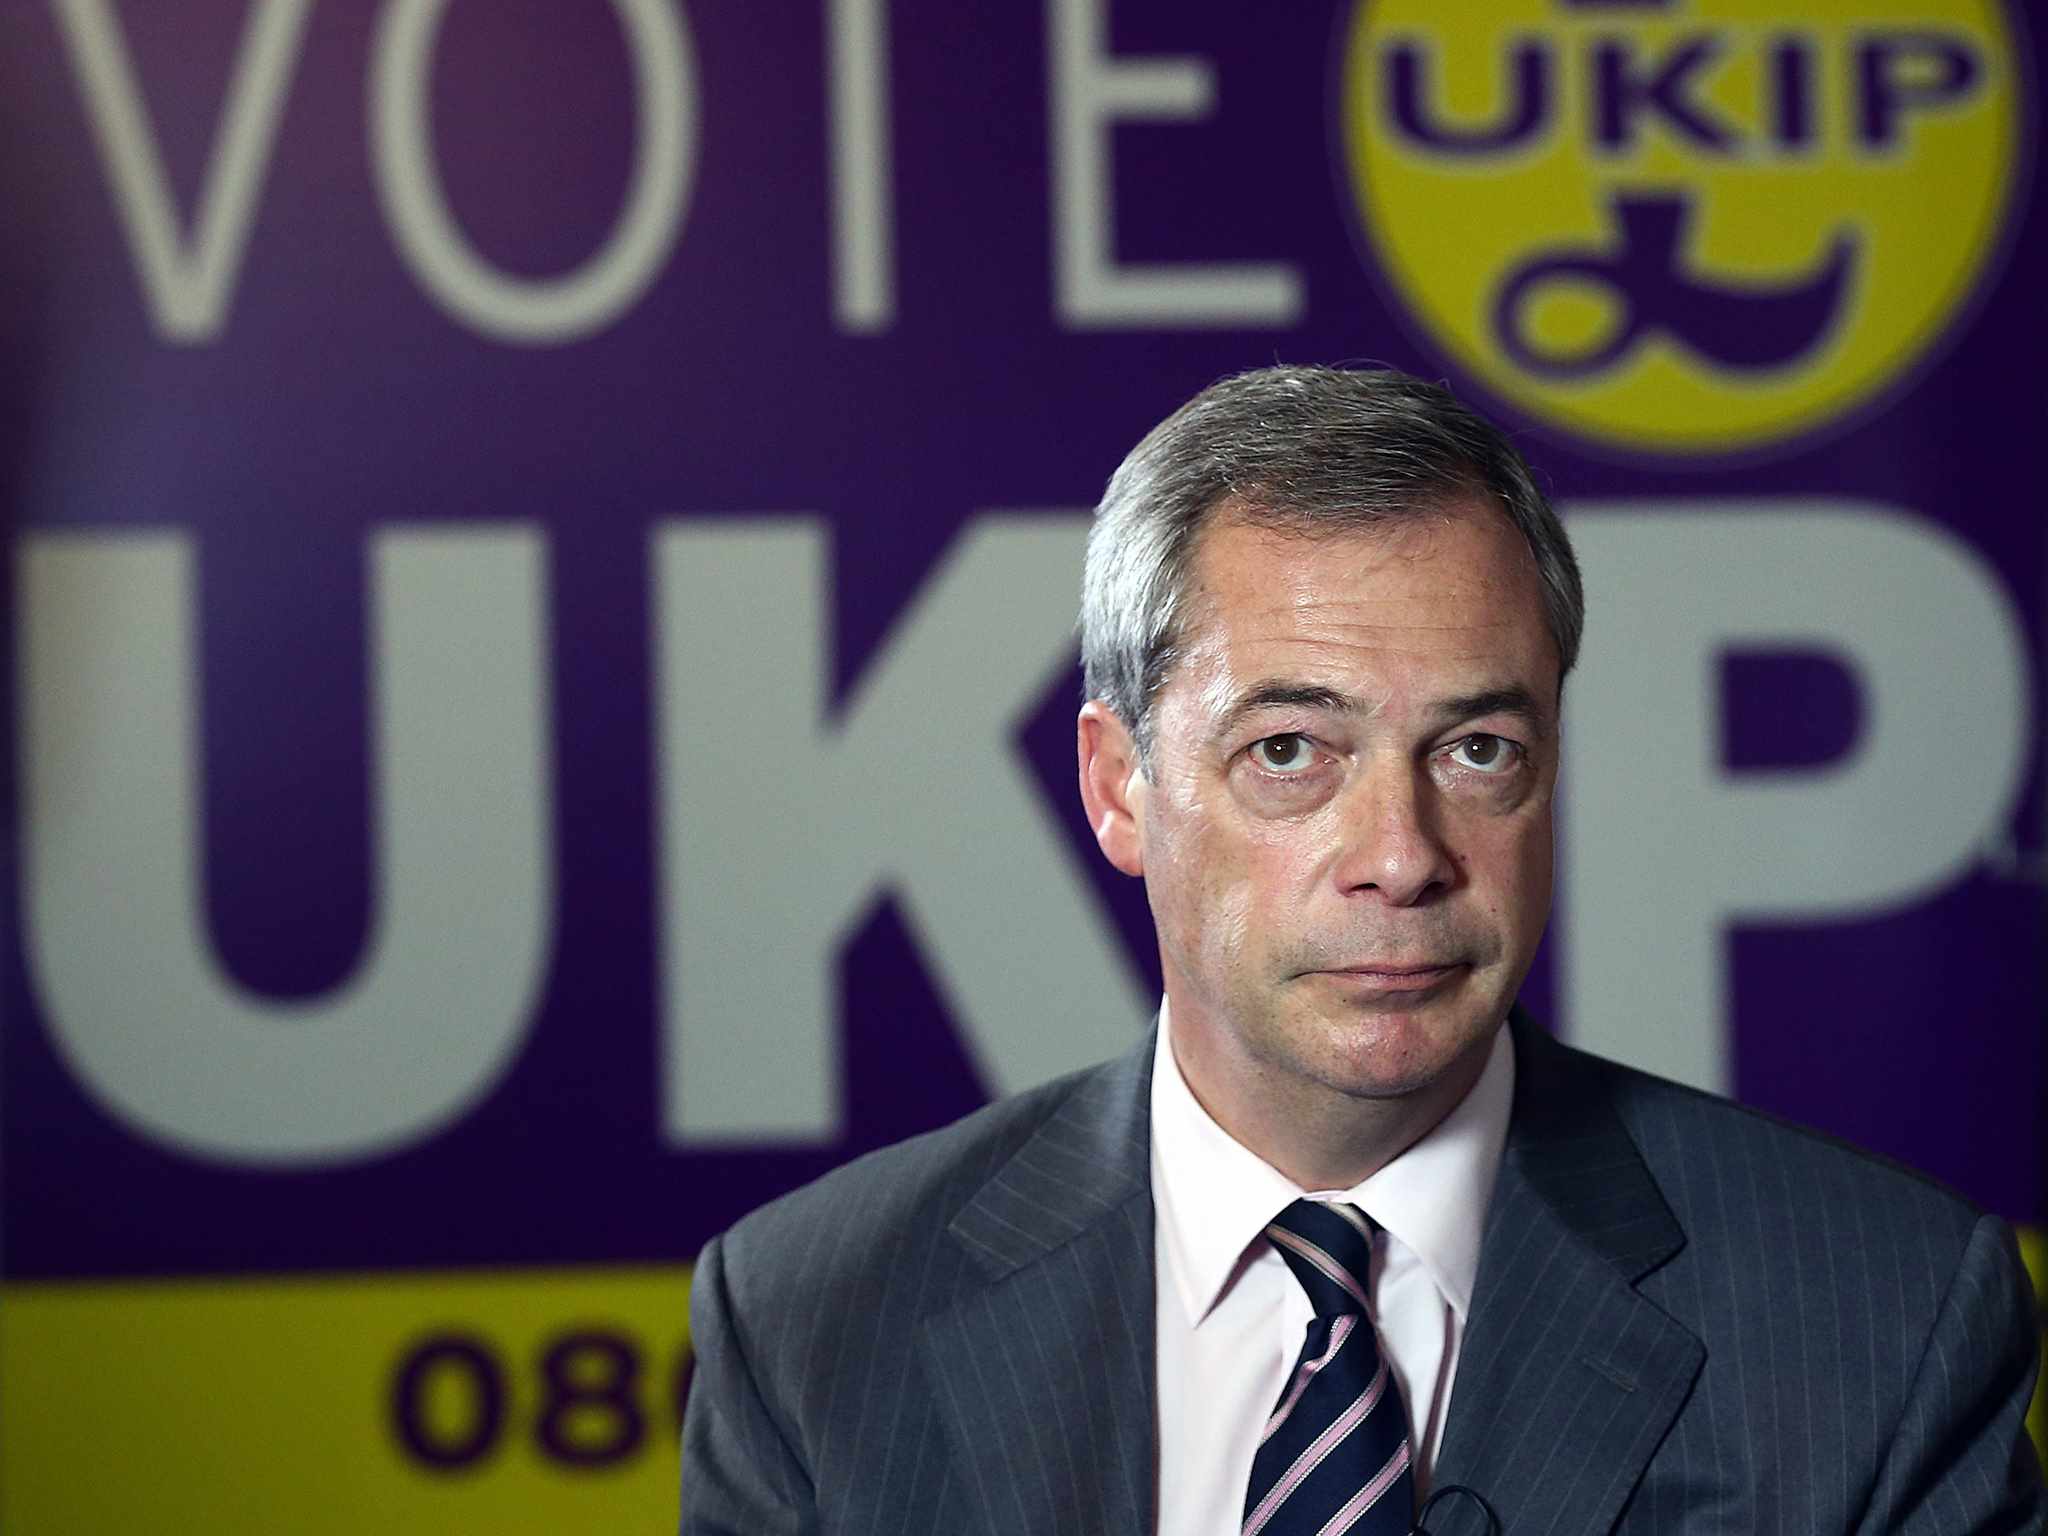 Nigel Farage lascia la leadership dello Ukip